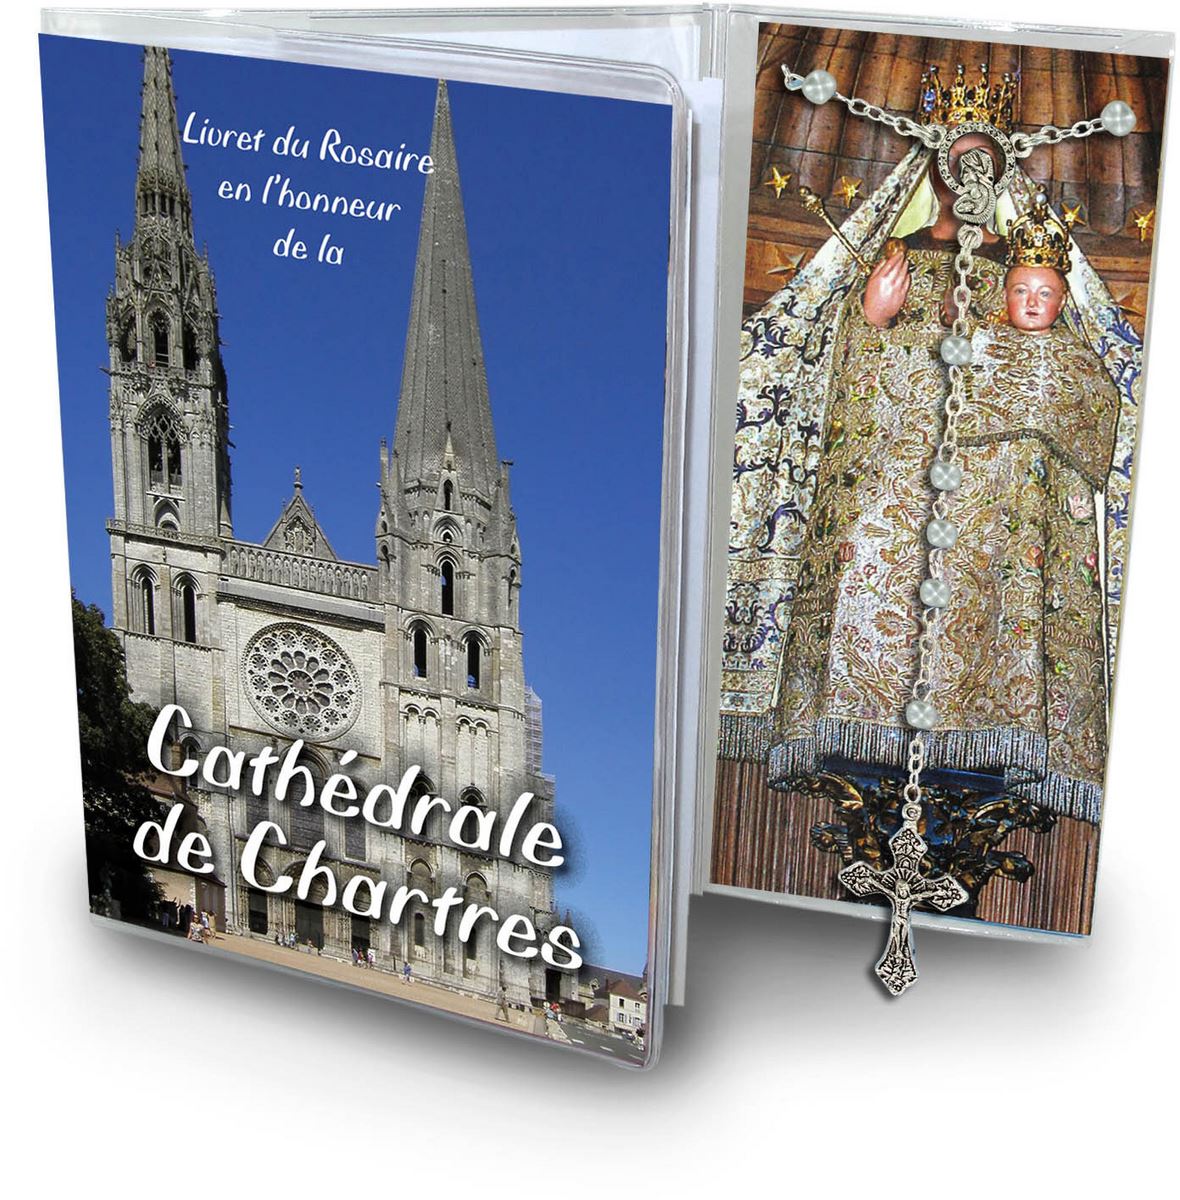 libretto con rosario cattedrale di chartres - francese